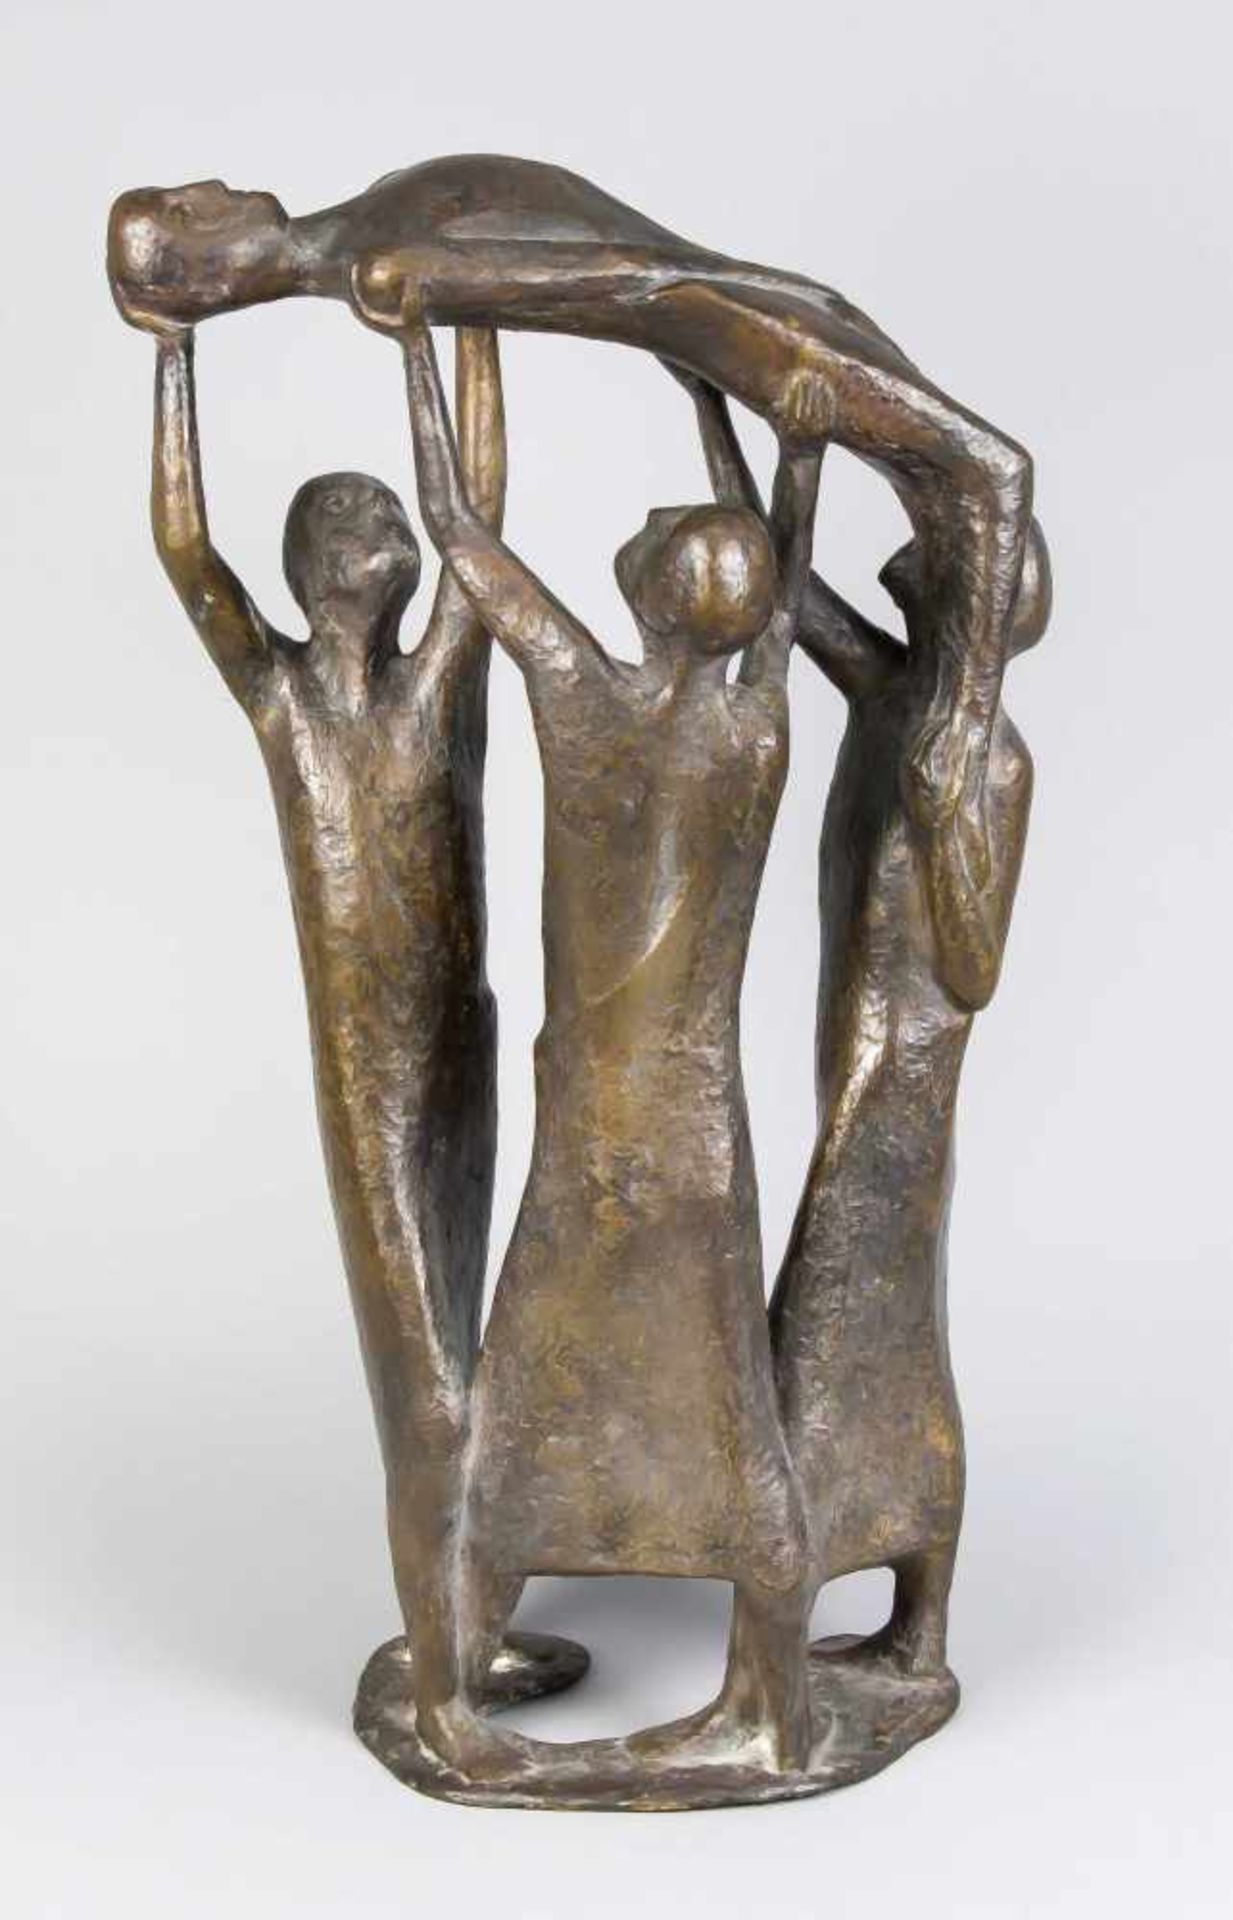 Ulrich Conrad (*1930, lebt in Worpswede), Der Gichtbrüchige, Bronze, 1963 (?), H. 52,5 cm,vgl.